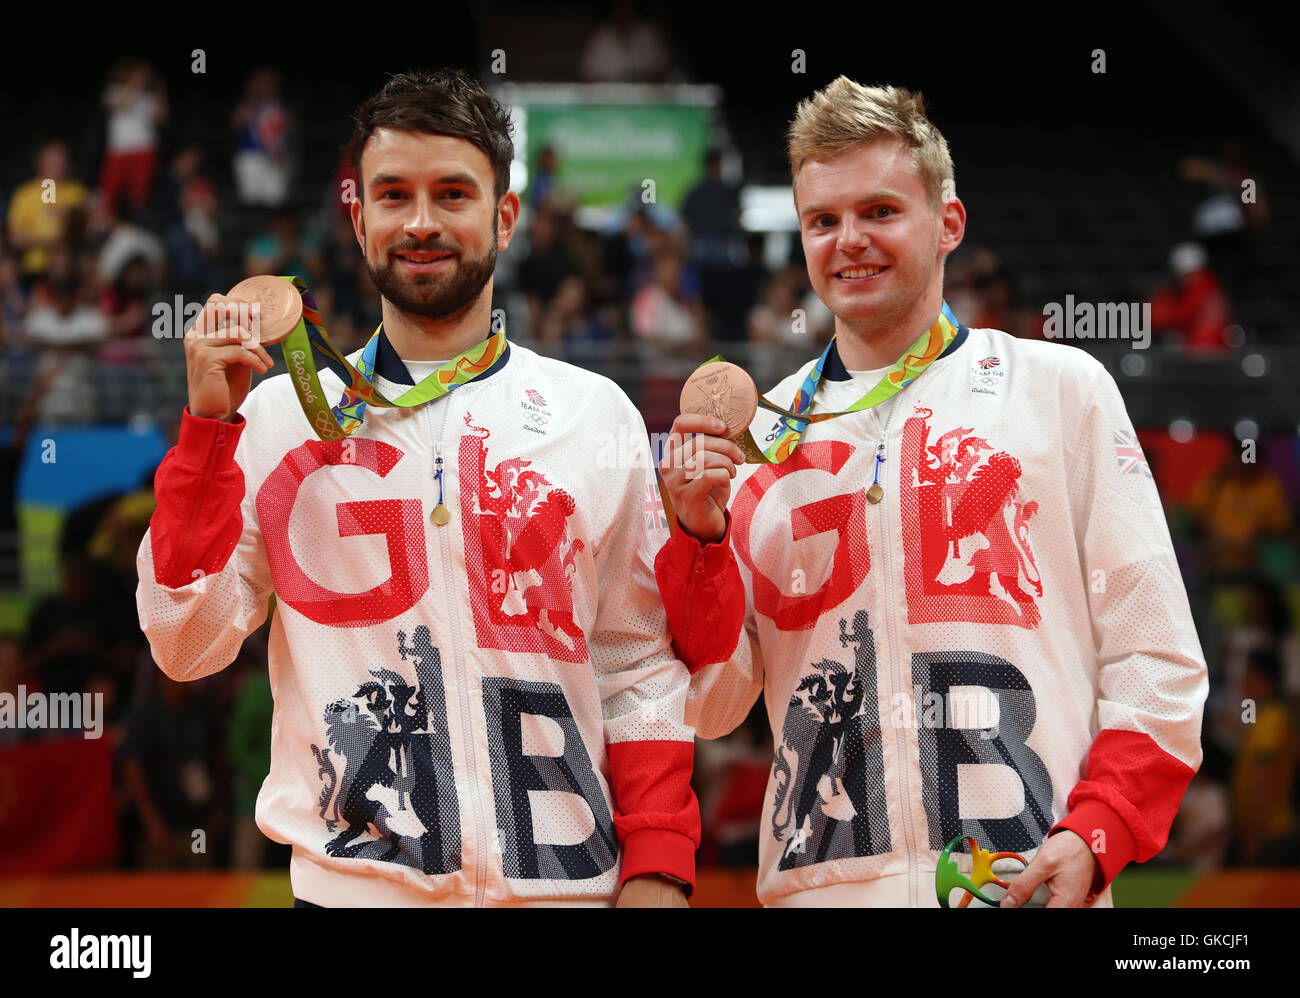 Großbritanniens Marcus Ellis und Chris Langridge (links) mit ihren Bronzemedaillen nach der Herren Badminton Doppel Finale im Riocentro - Pavillon 4 am vierzehnten Tag der Olympischen Spiele in Rio, Brasilien. Stockfoto